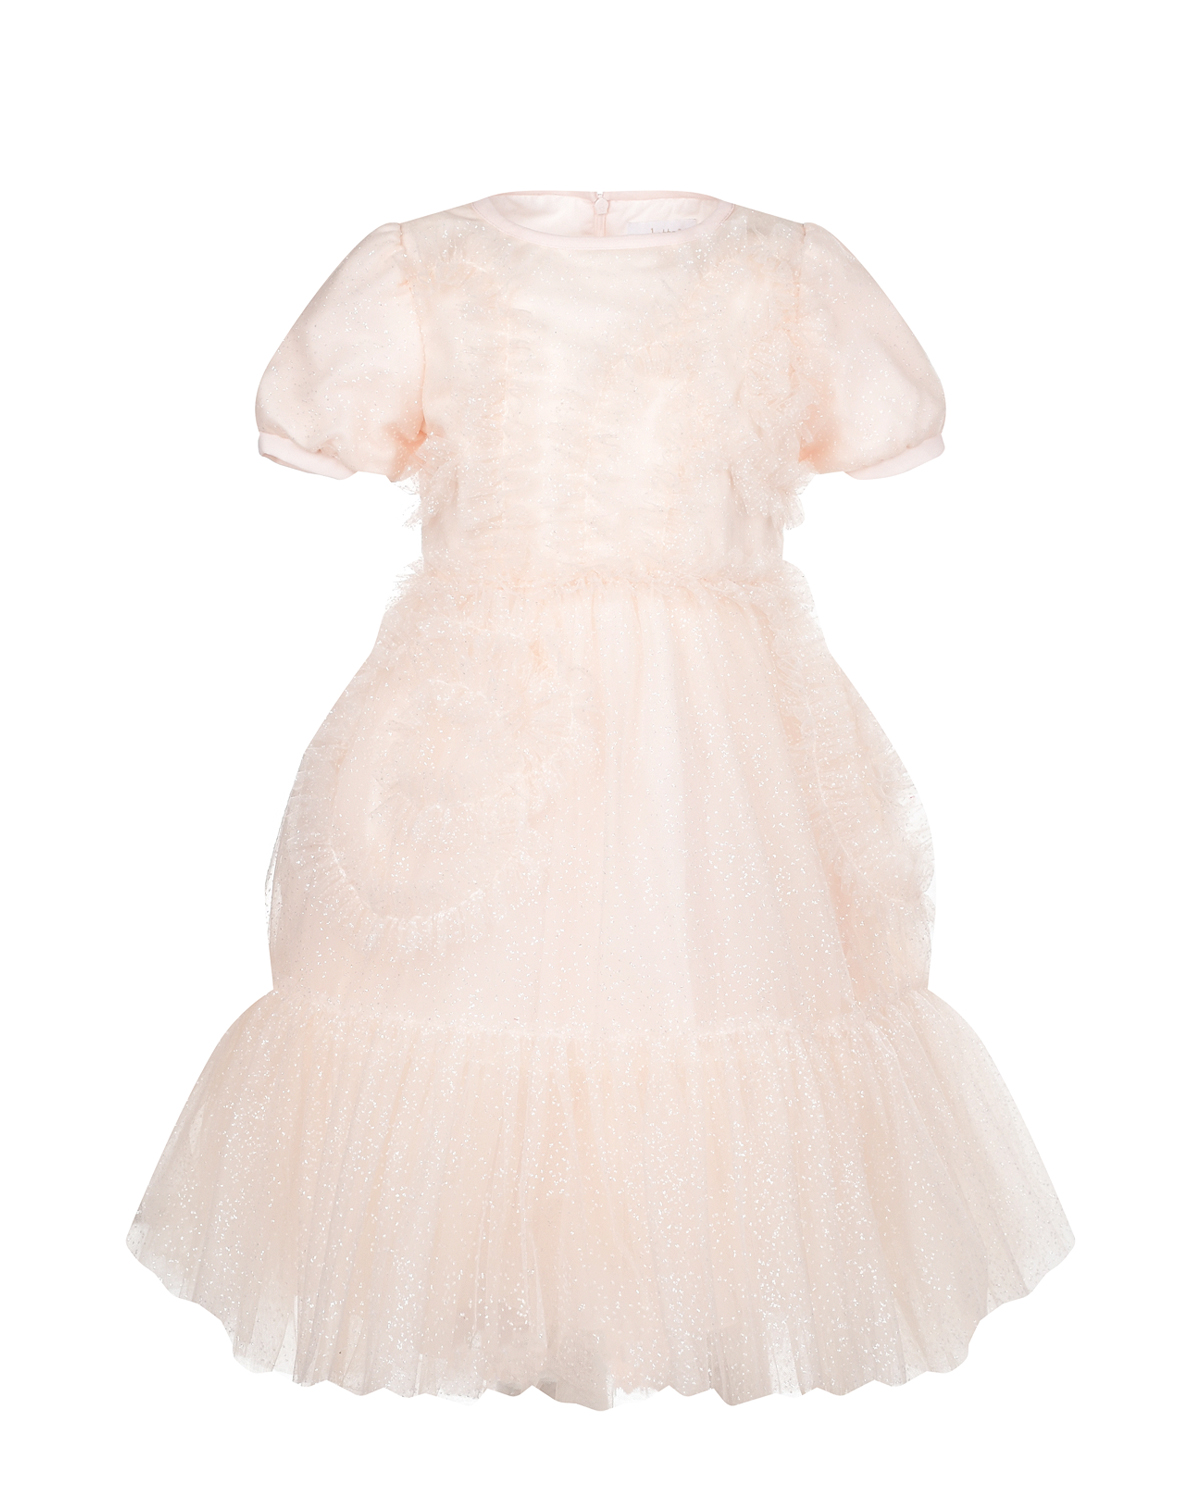 Платье персикового цвета с рюшами Aletta детское, размер 110 - фото 1